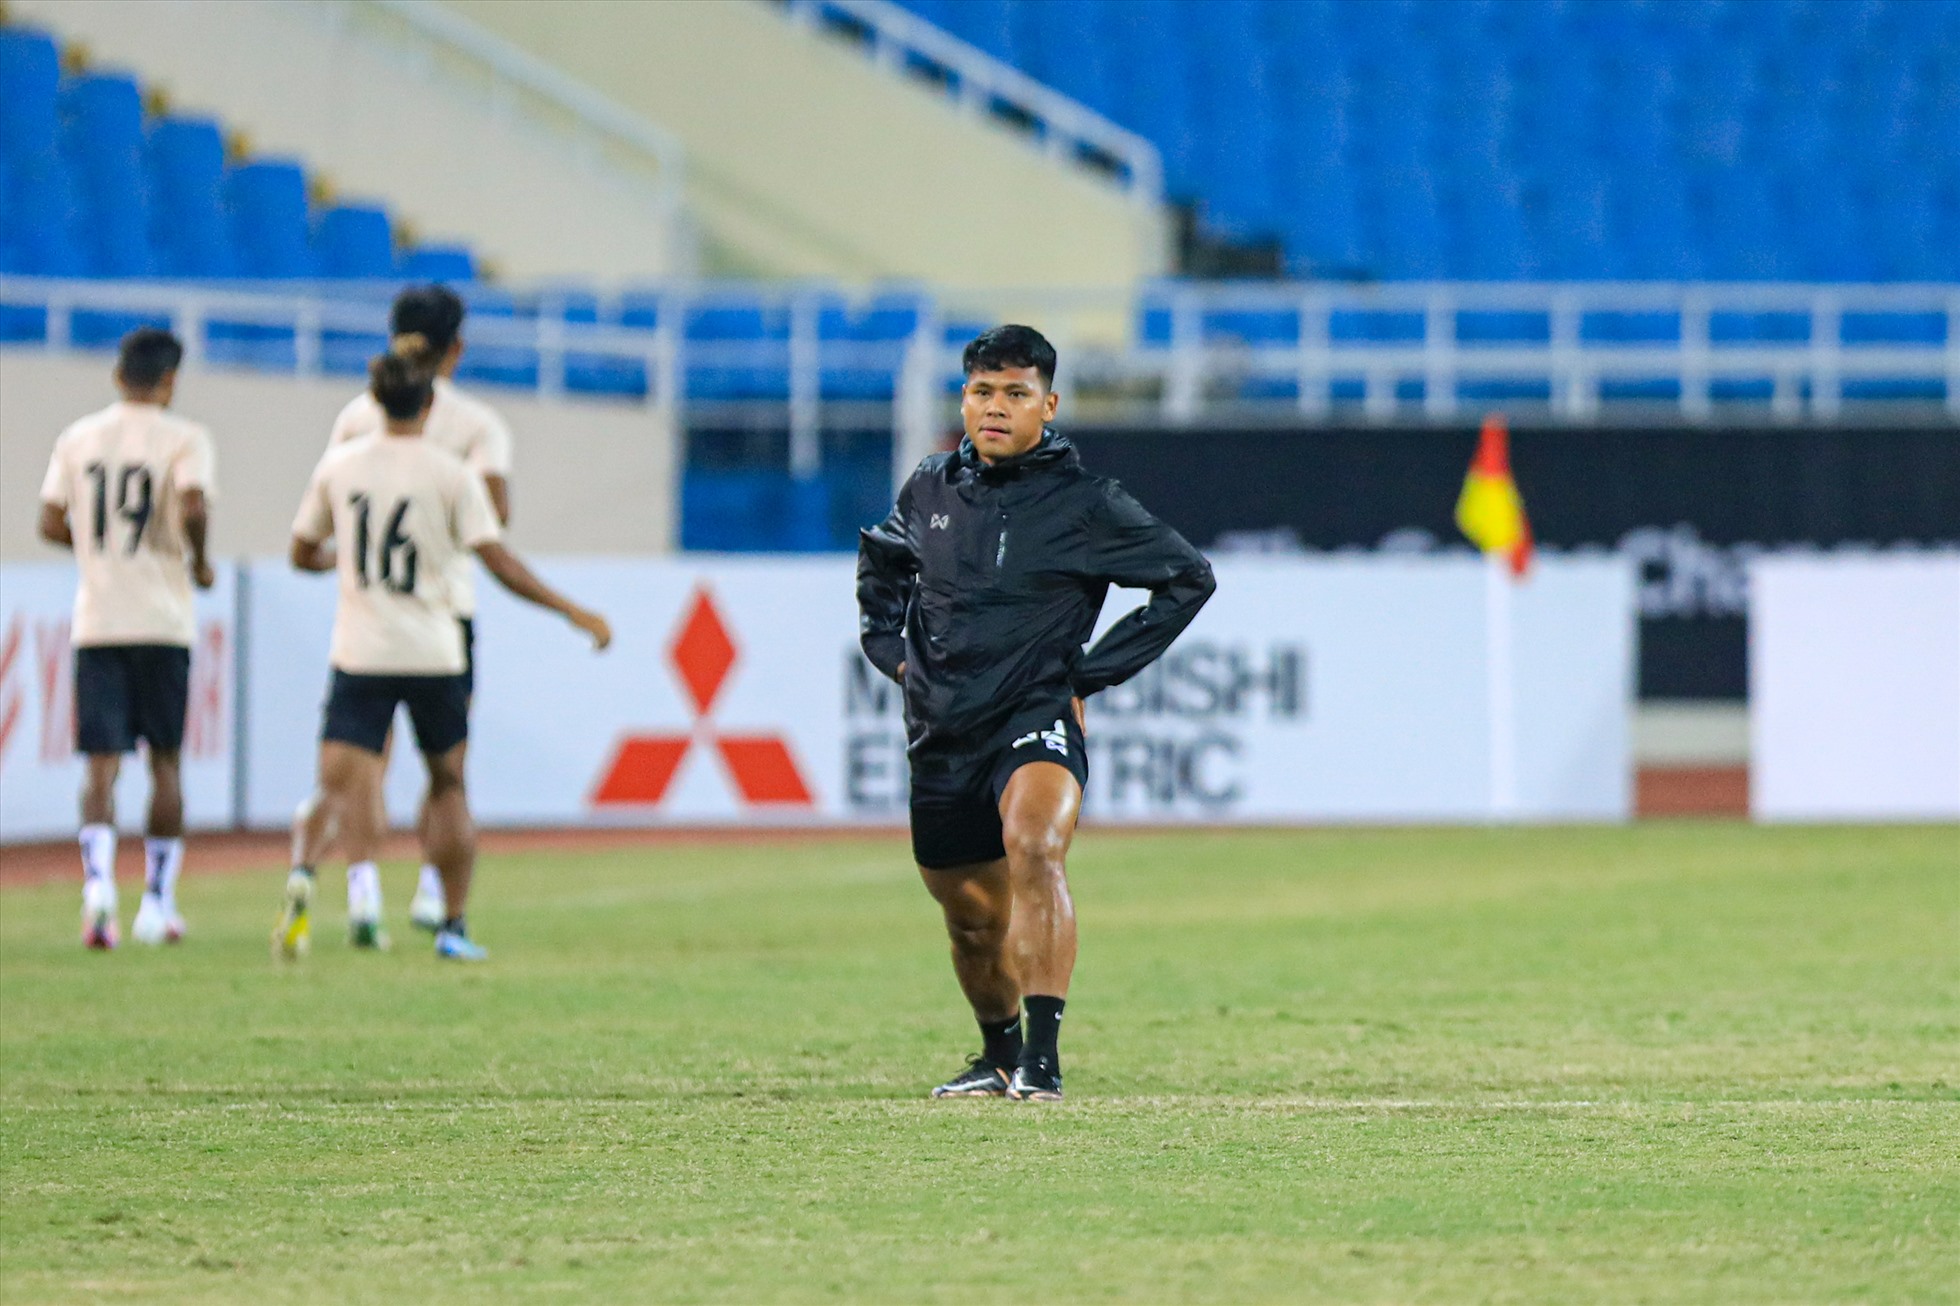 Cầu thủ Kyaw Zin Lwin mặc áo khoác làm quen sân.